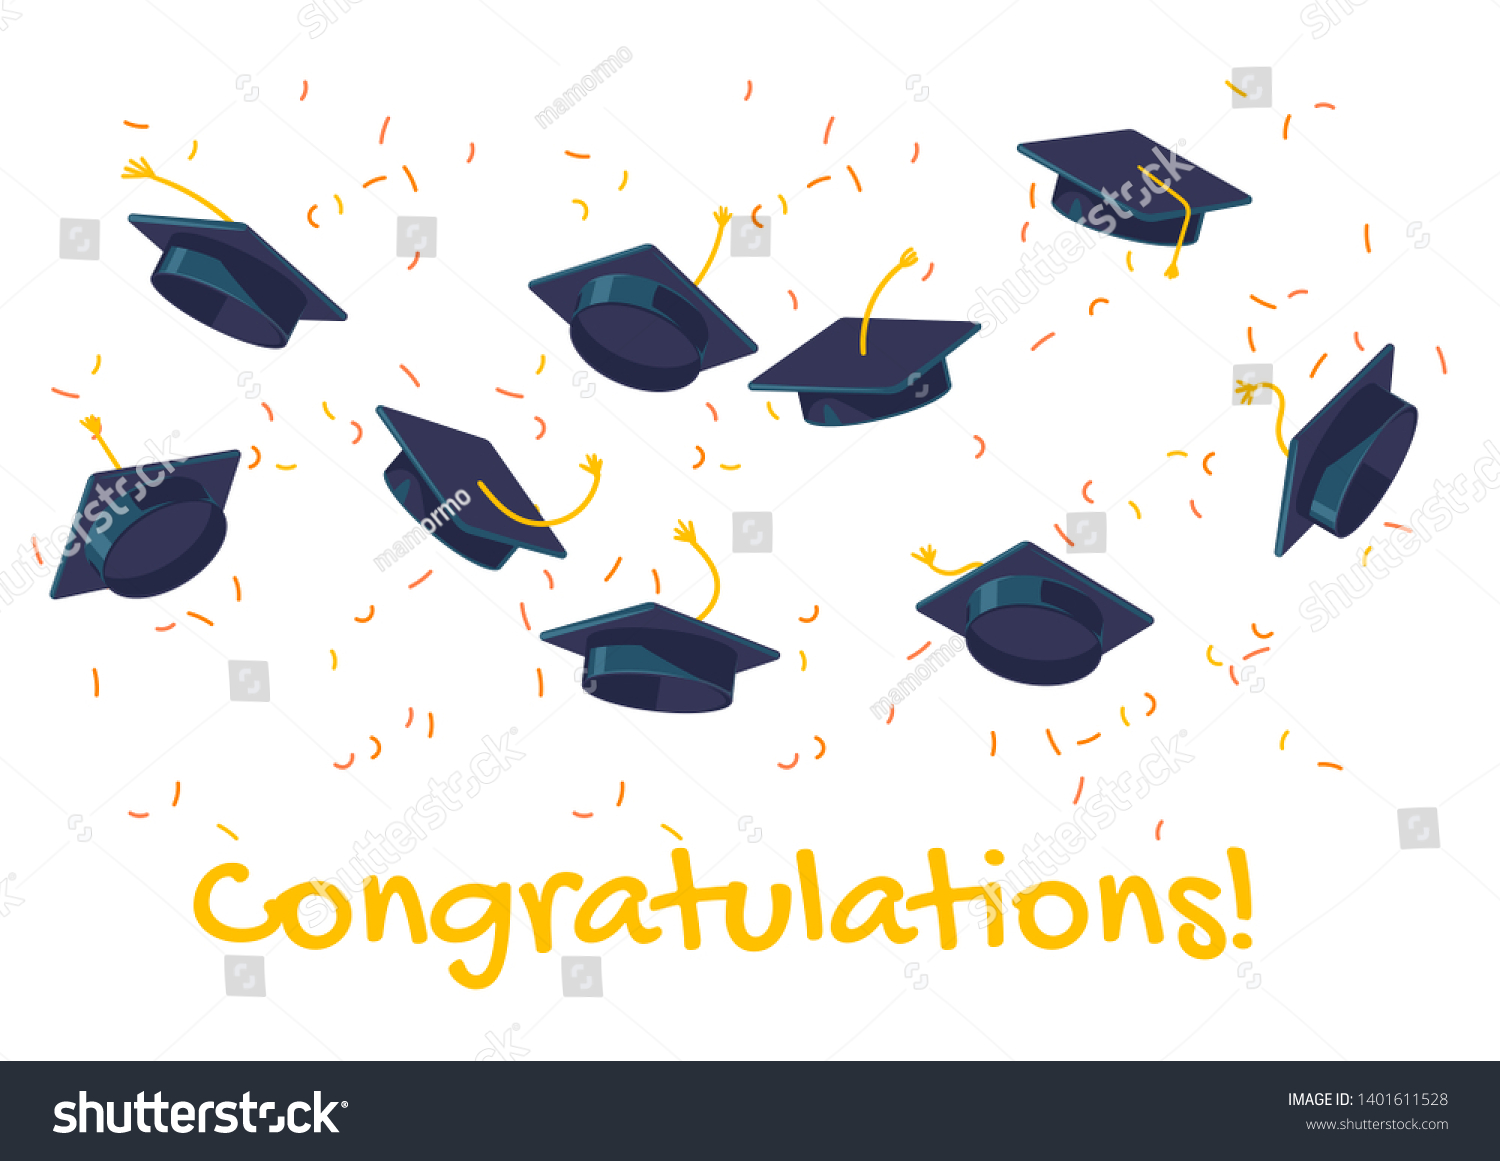 Graduate Caps Confetti On White Background Stock Illustration 1401611528 Shutterstock 